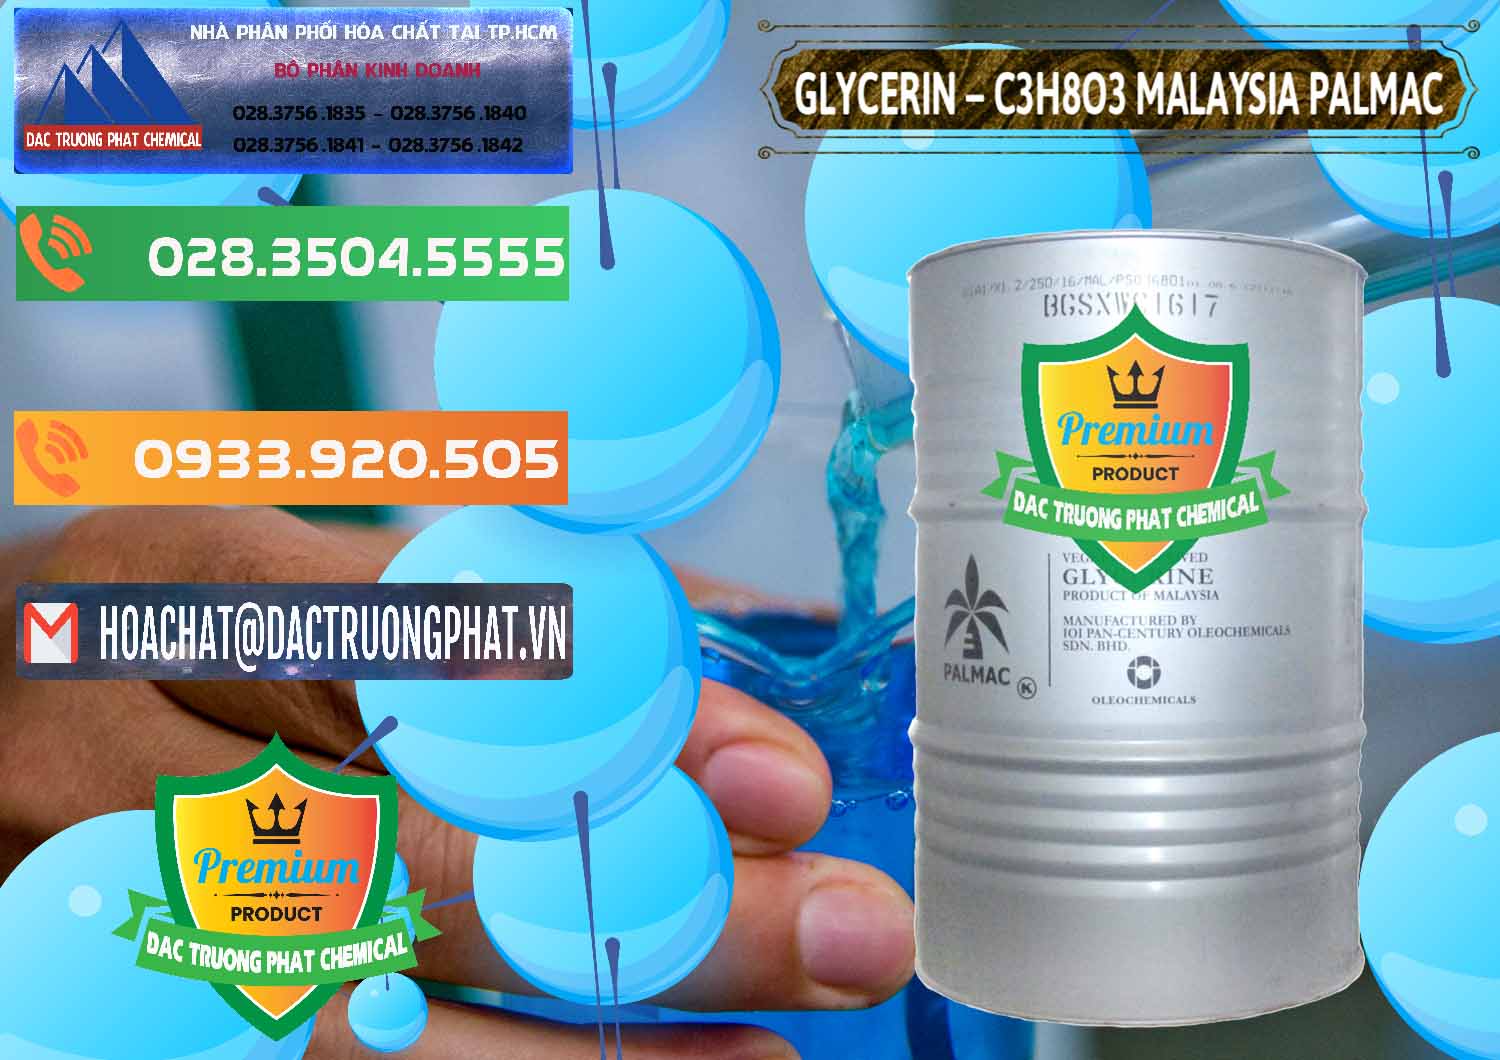 Cty bán ( cung cấp ) Glycerin – C3H8O3 99.7% Malaysia Palmac - 0067 - Chuyên nhập khẩu & phân phối hóa chất tại TP.HCM - hoachatxulynuoc.com.vn